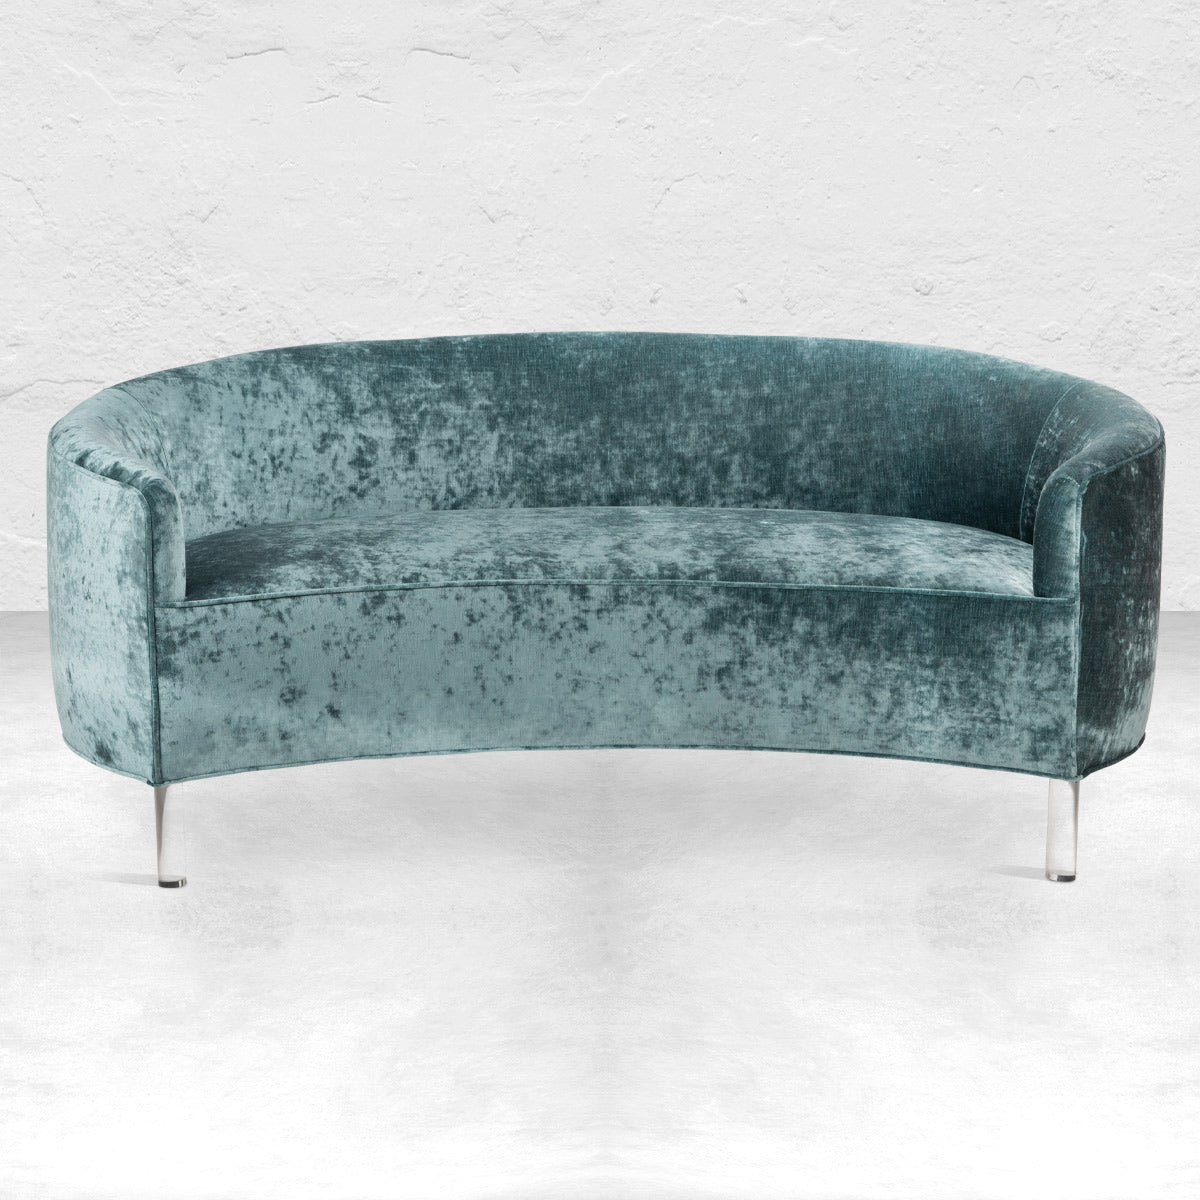 Art Deco Petite Sofa in Crushed Velvet and Round Lucite Legs